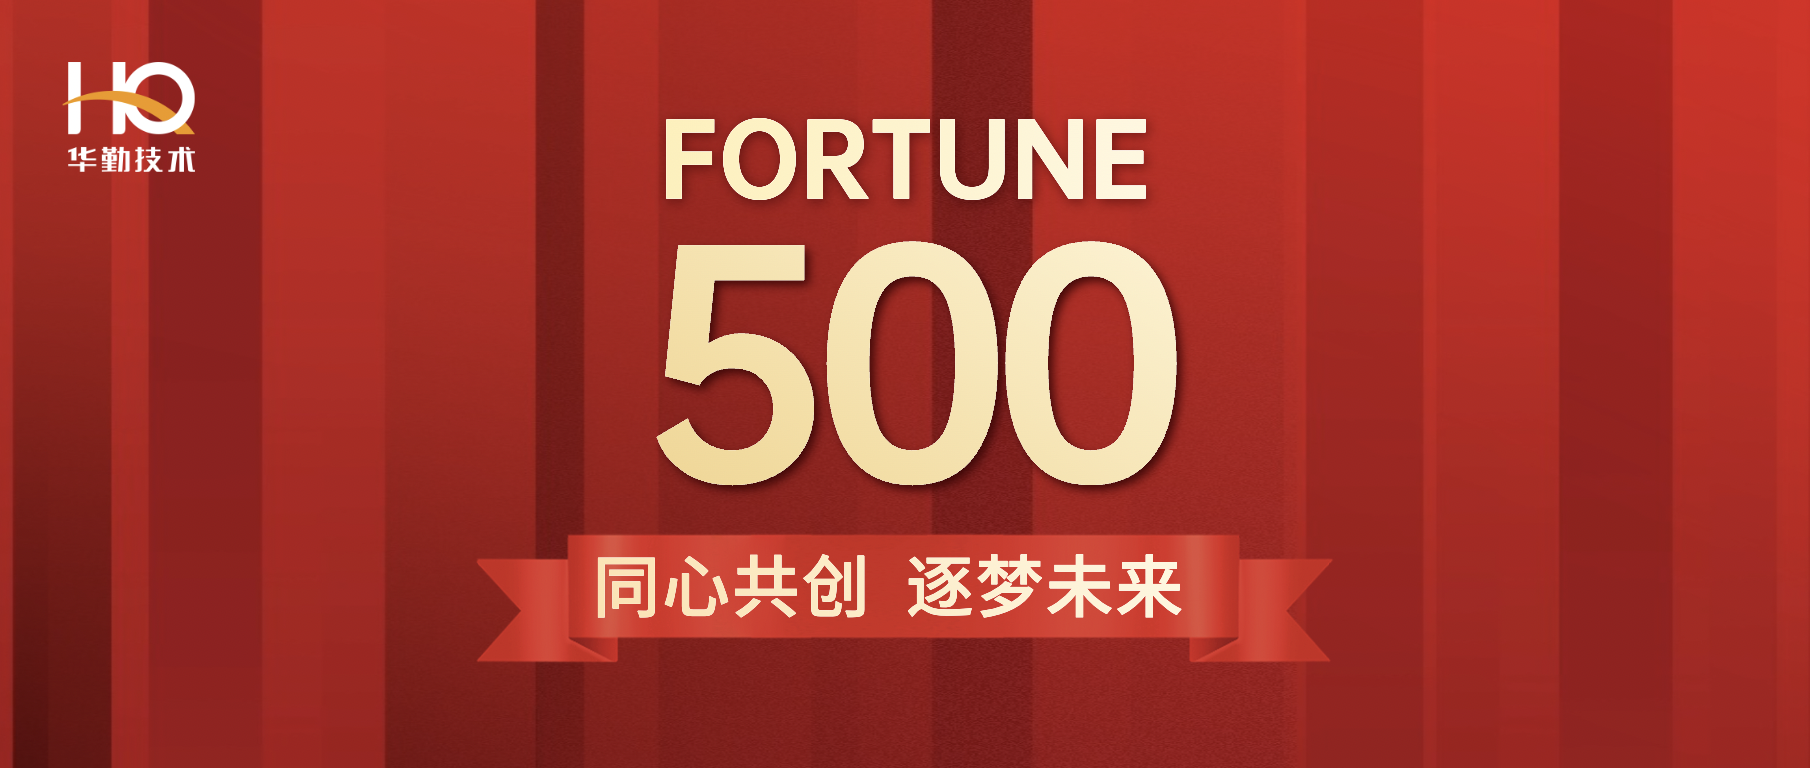 真人体育首登《财富》中国500强位列第213位